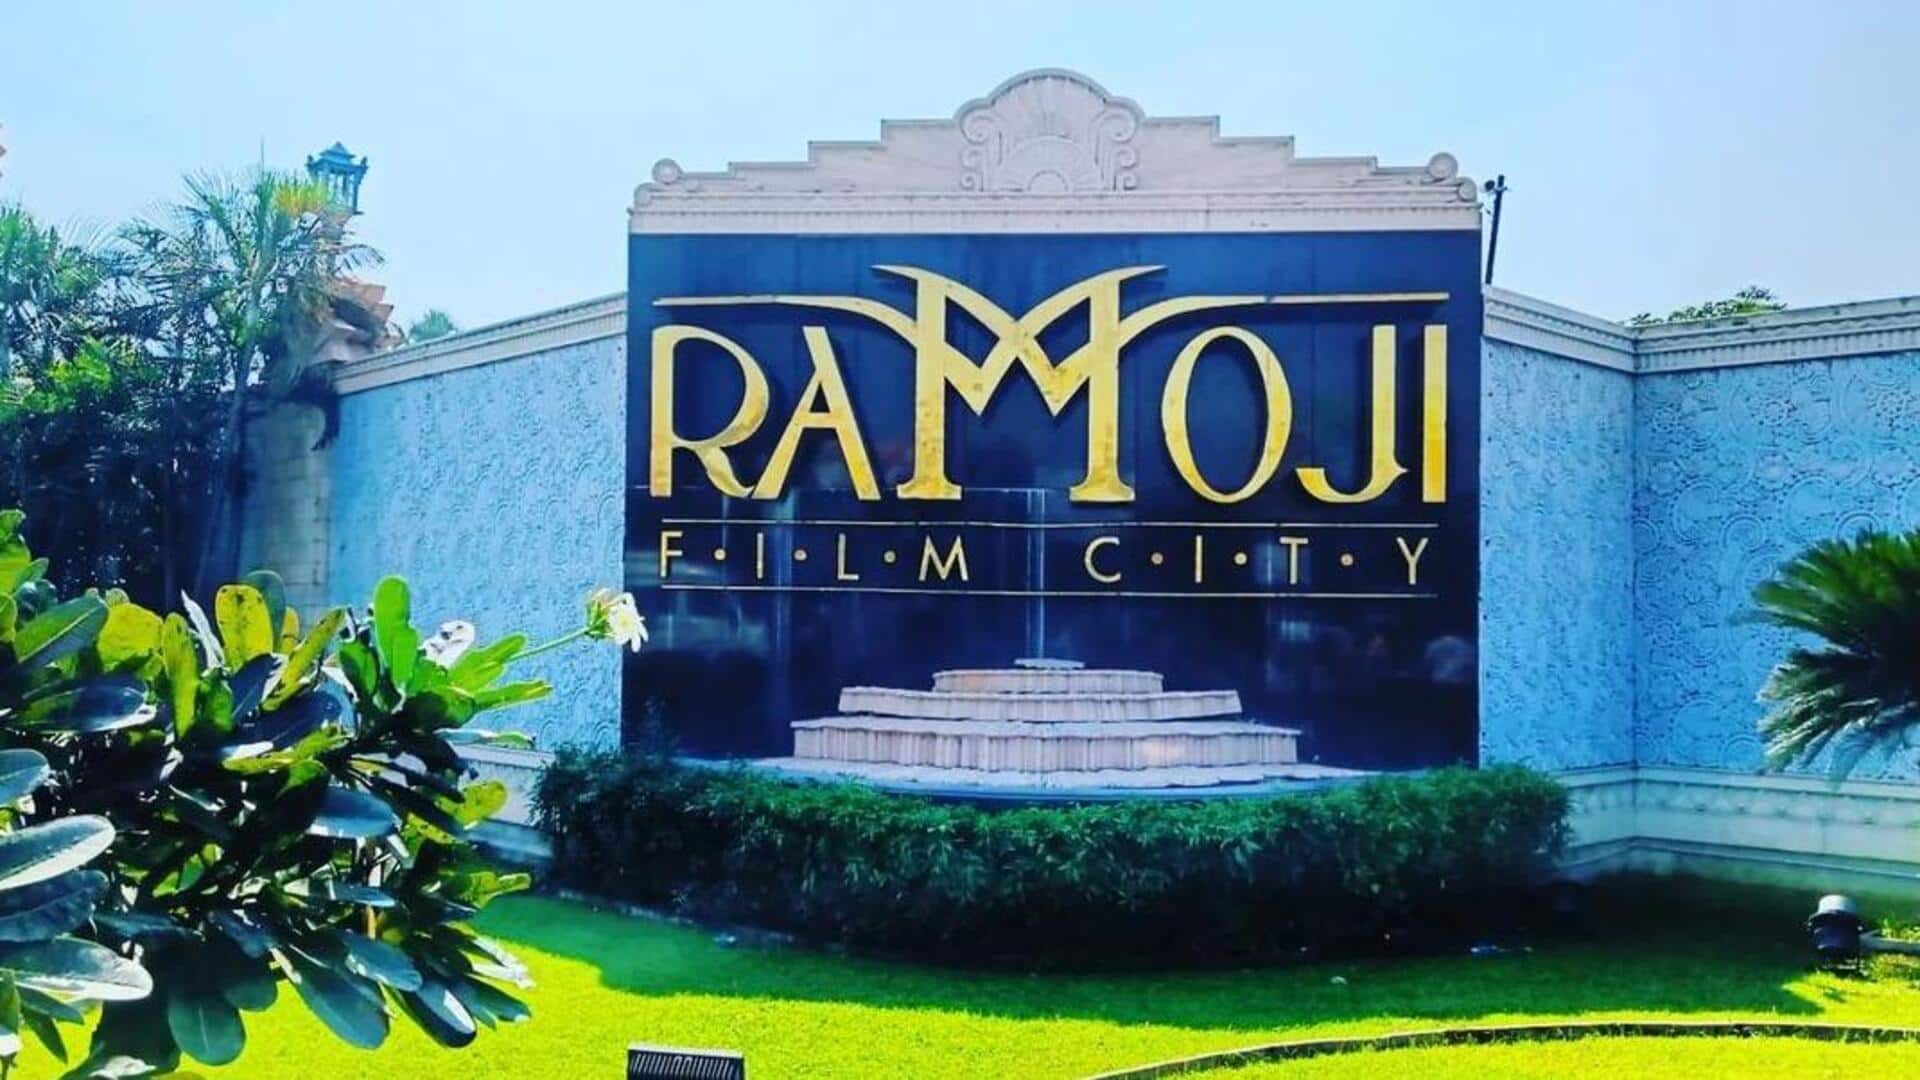 #NewsBytesExplainer: कब और किसने बनाई हैदराबाद की रामोजी फिल्म सिटी? जानिए खास बातें